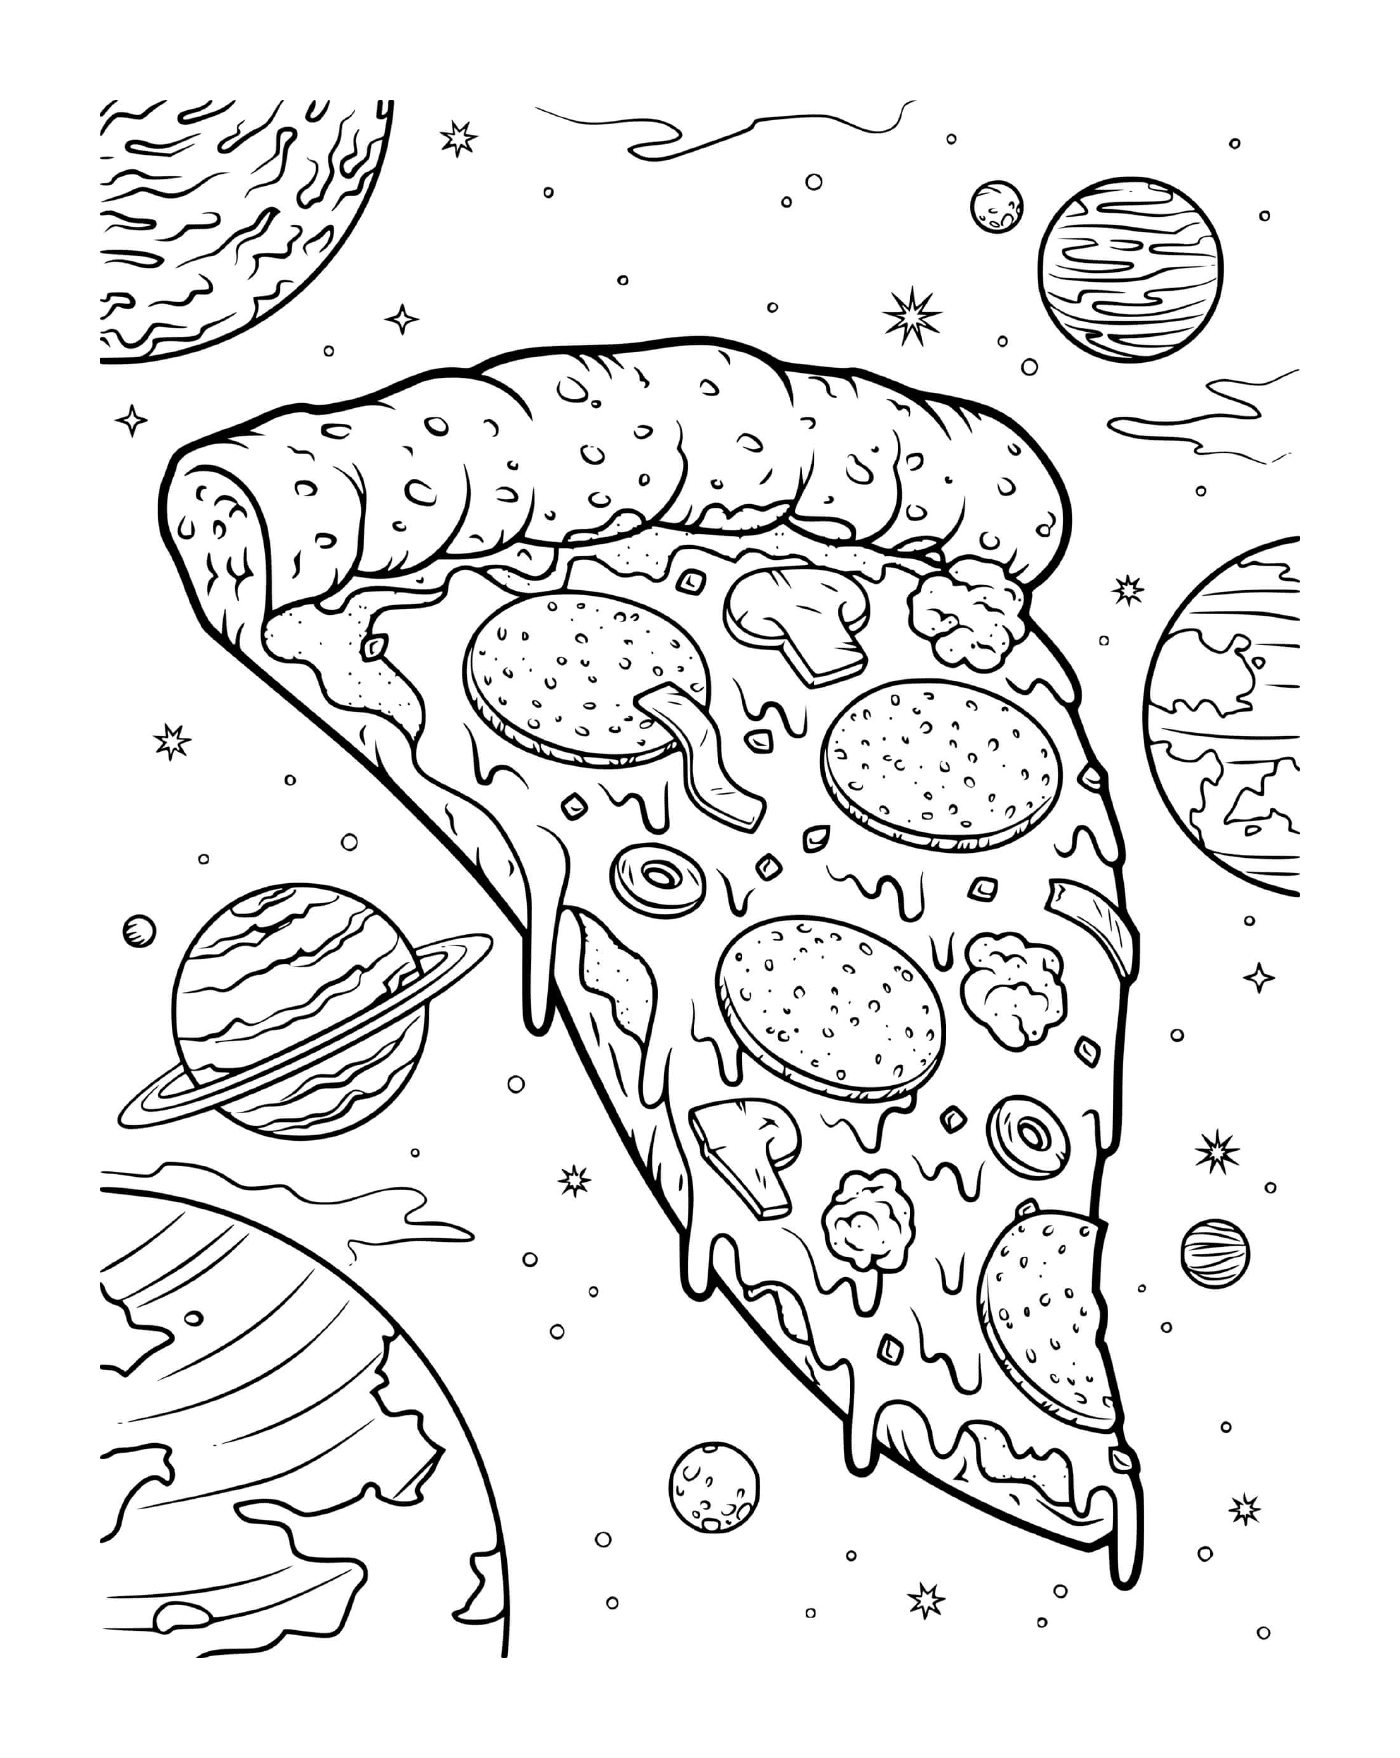  太空奶酪蘑菇比萨 